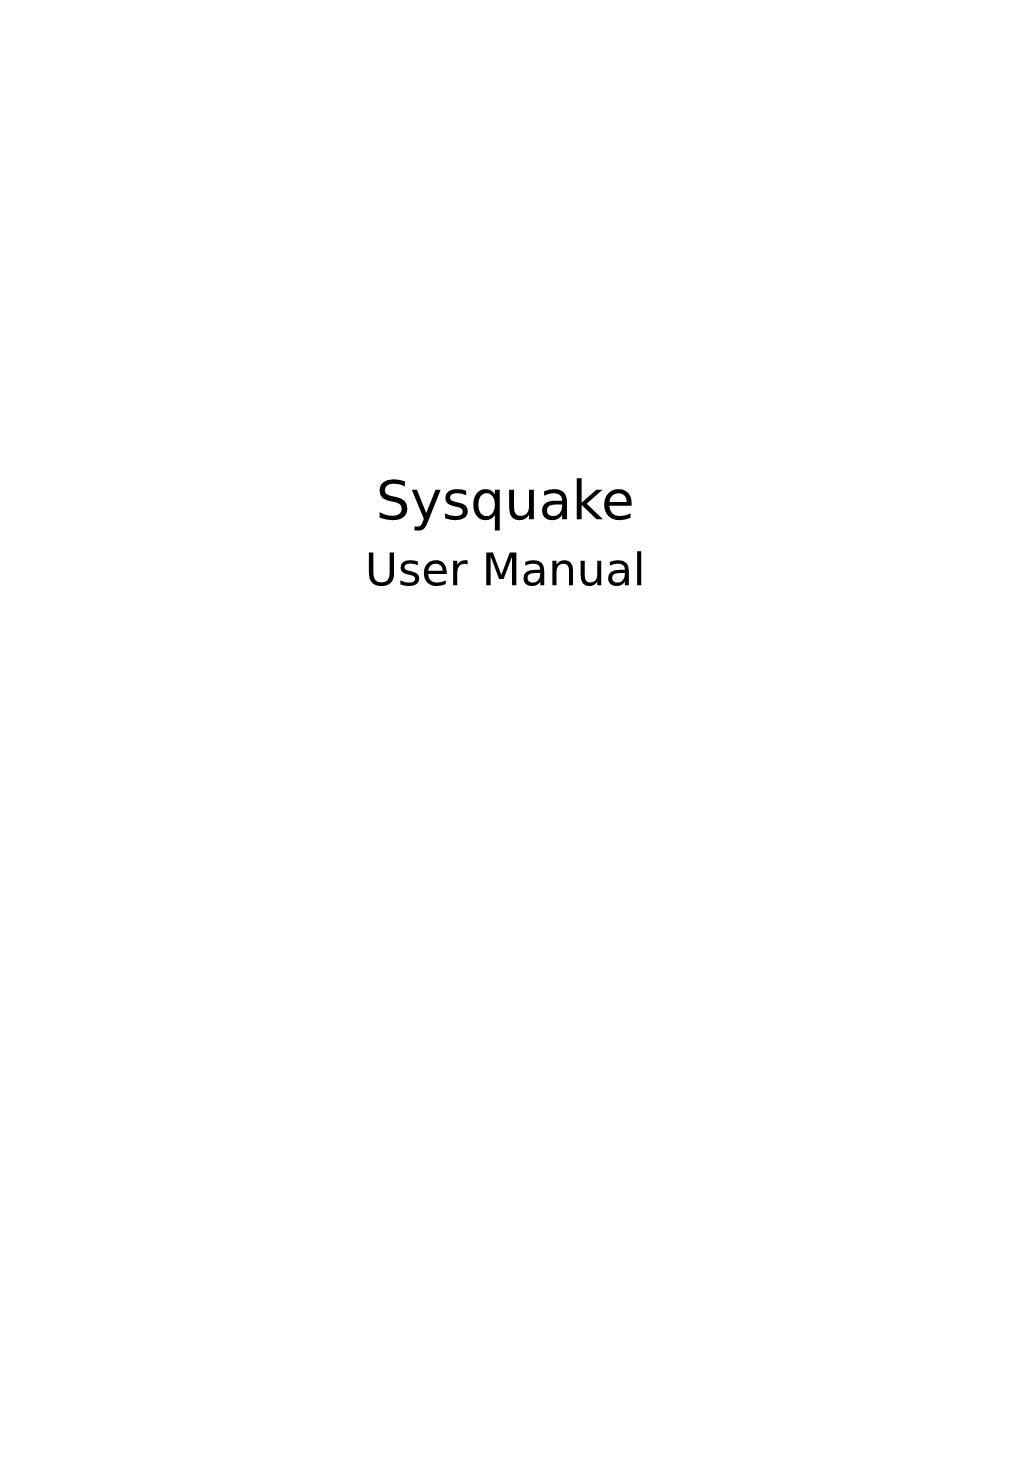 Sysquake User Manual 2 Sysquake User Manual ©1999-2016, Calerga Sàrl